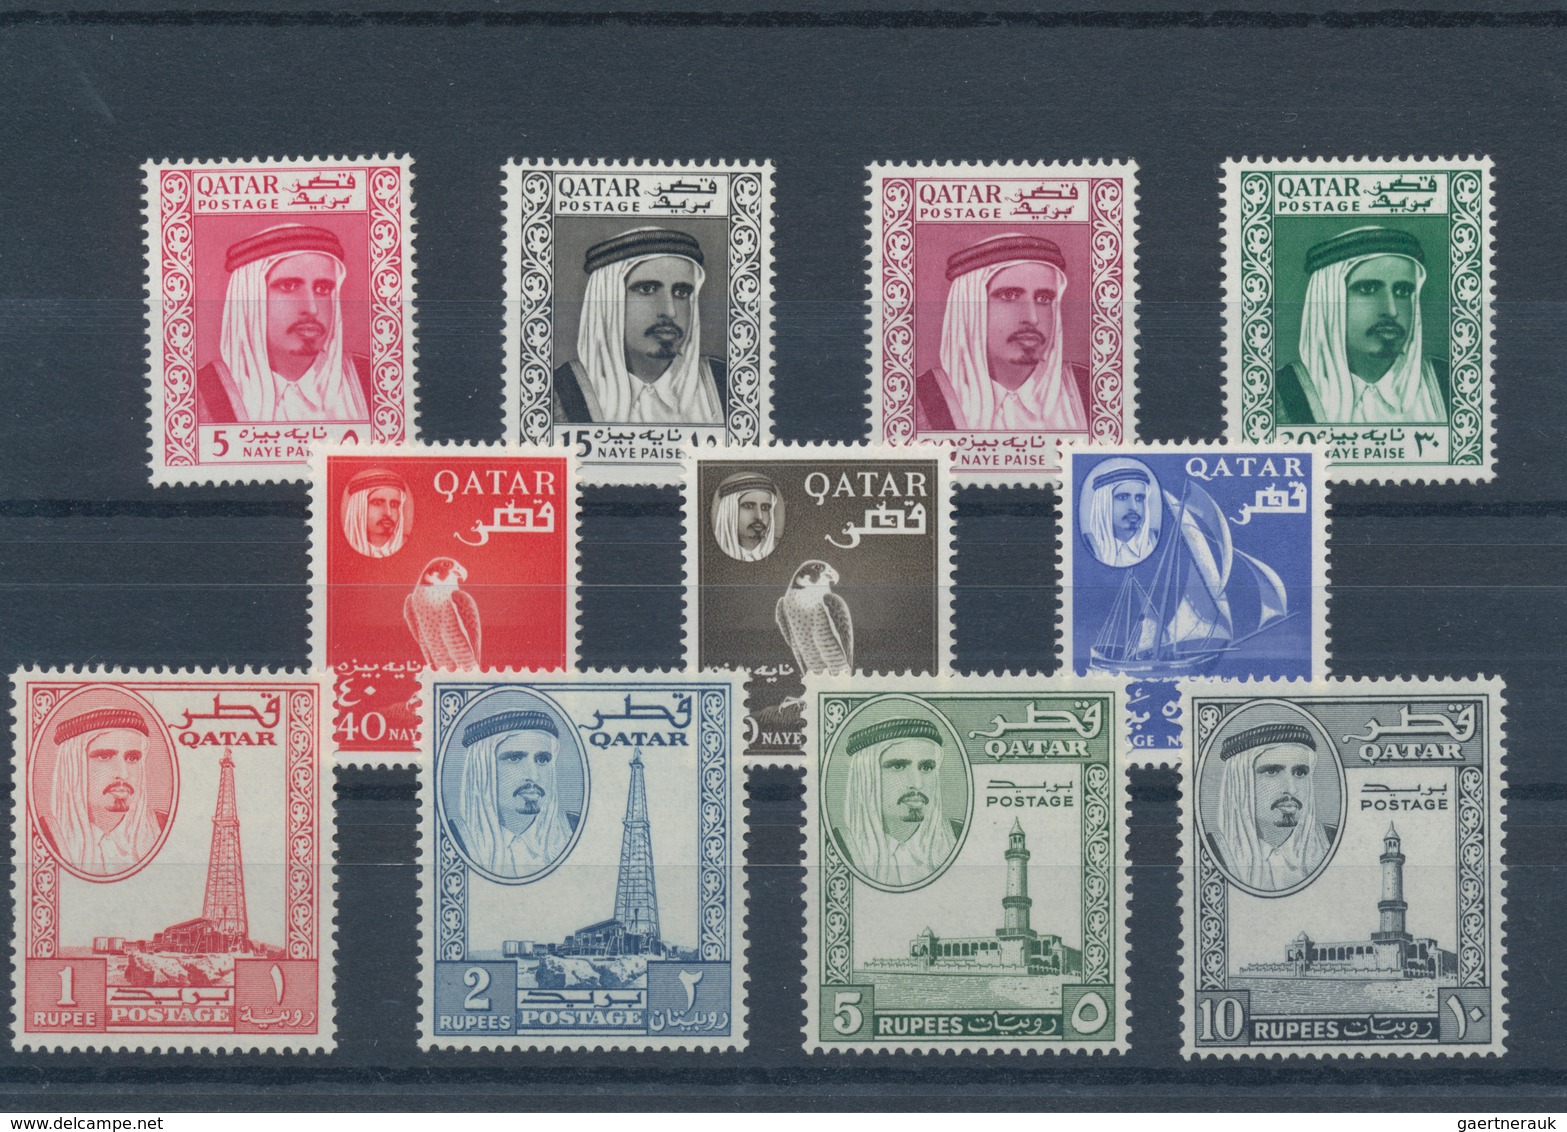 23326 Katar / Qatar: 1957/1972, Mint Assortment On Stockcards From Ovp. On GB, E.g. 1961 Definitives (2), - Qatar